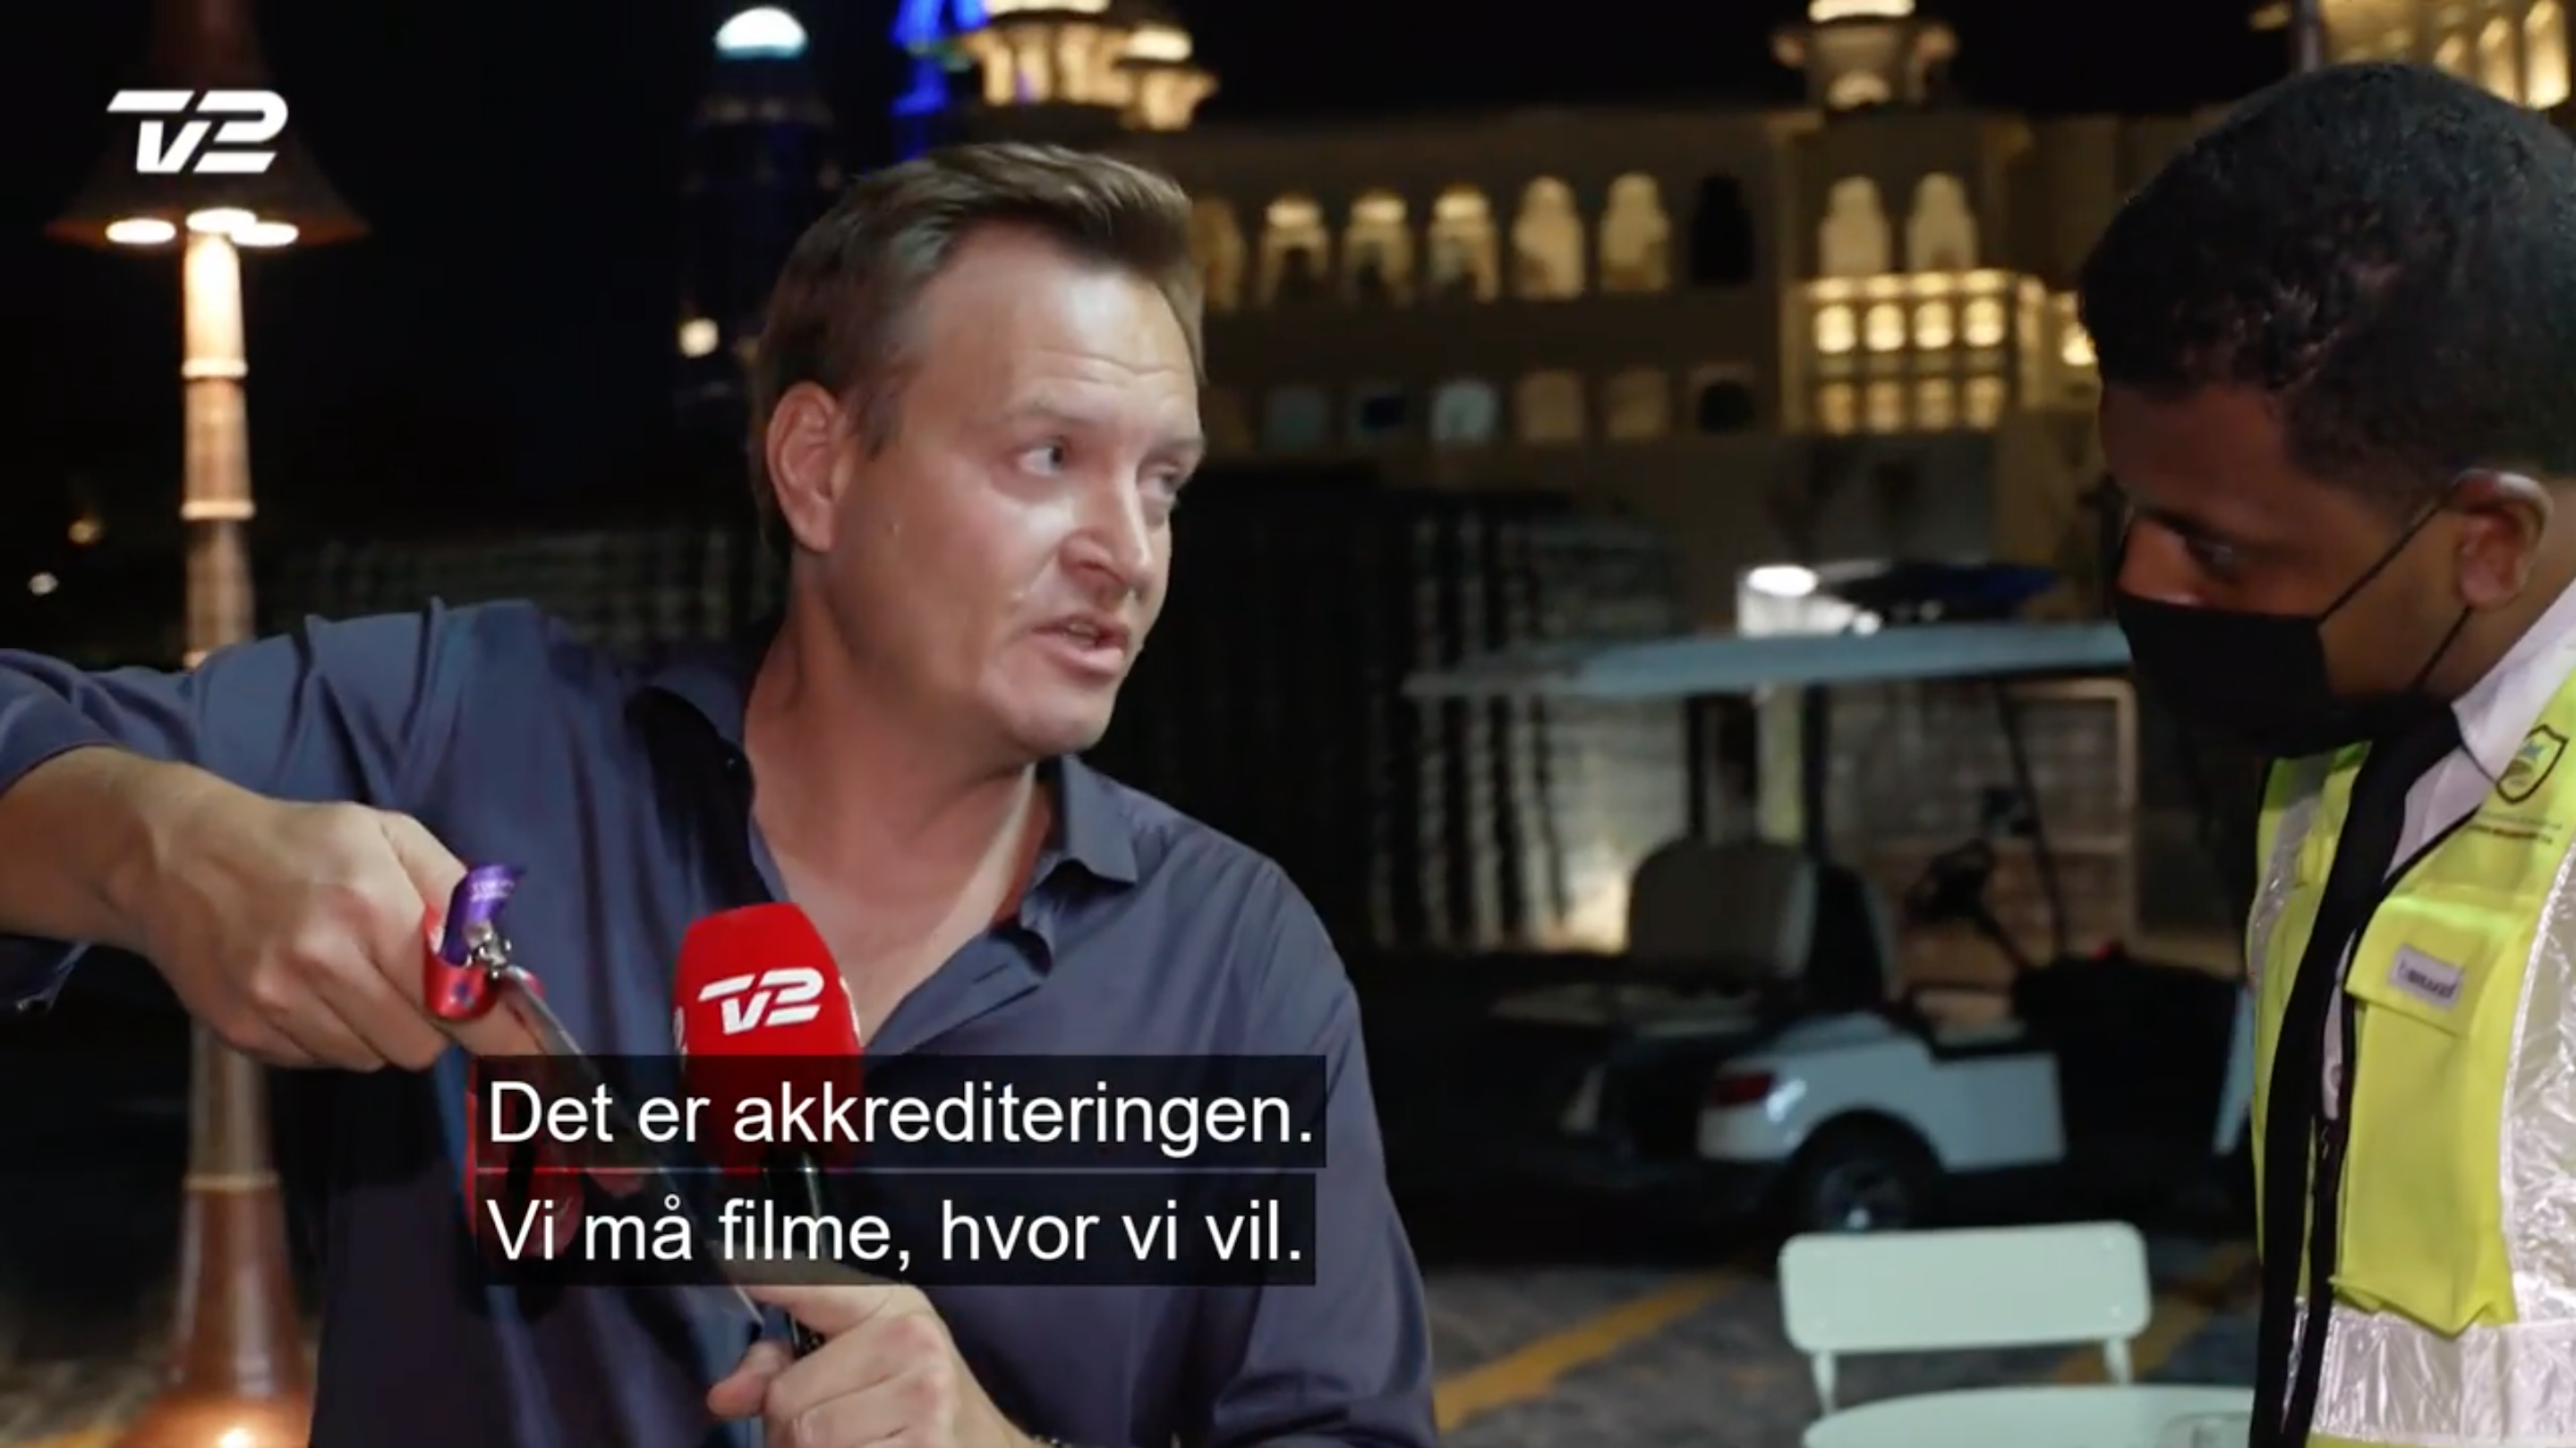 Der Dänische Journalist Rasmus Tantholdt zeigt Sicherheitskräften seine Akkreditierung.